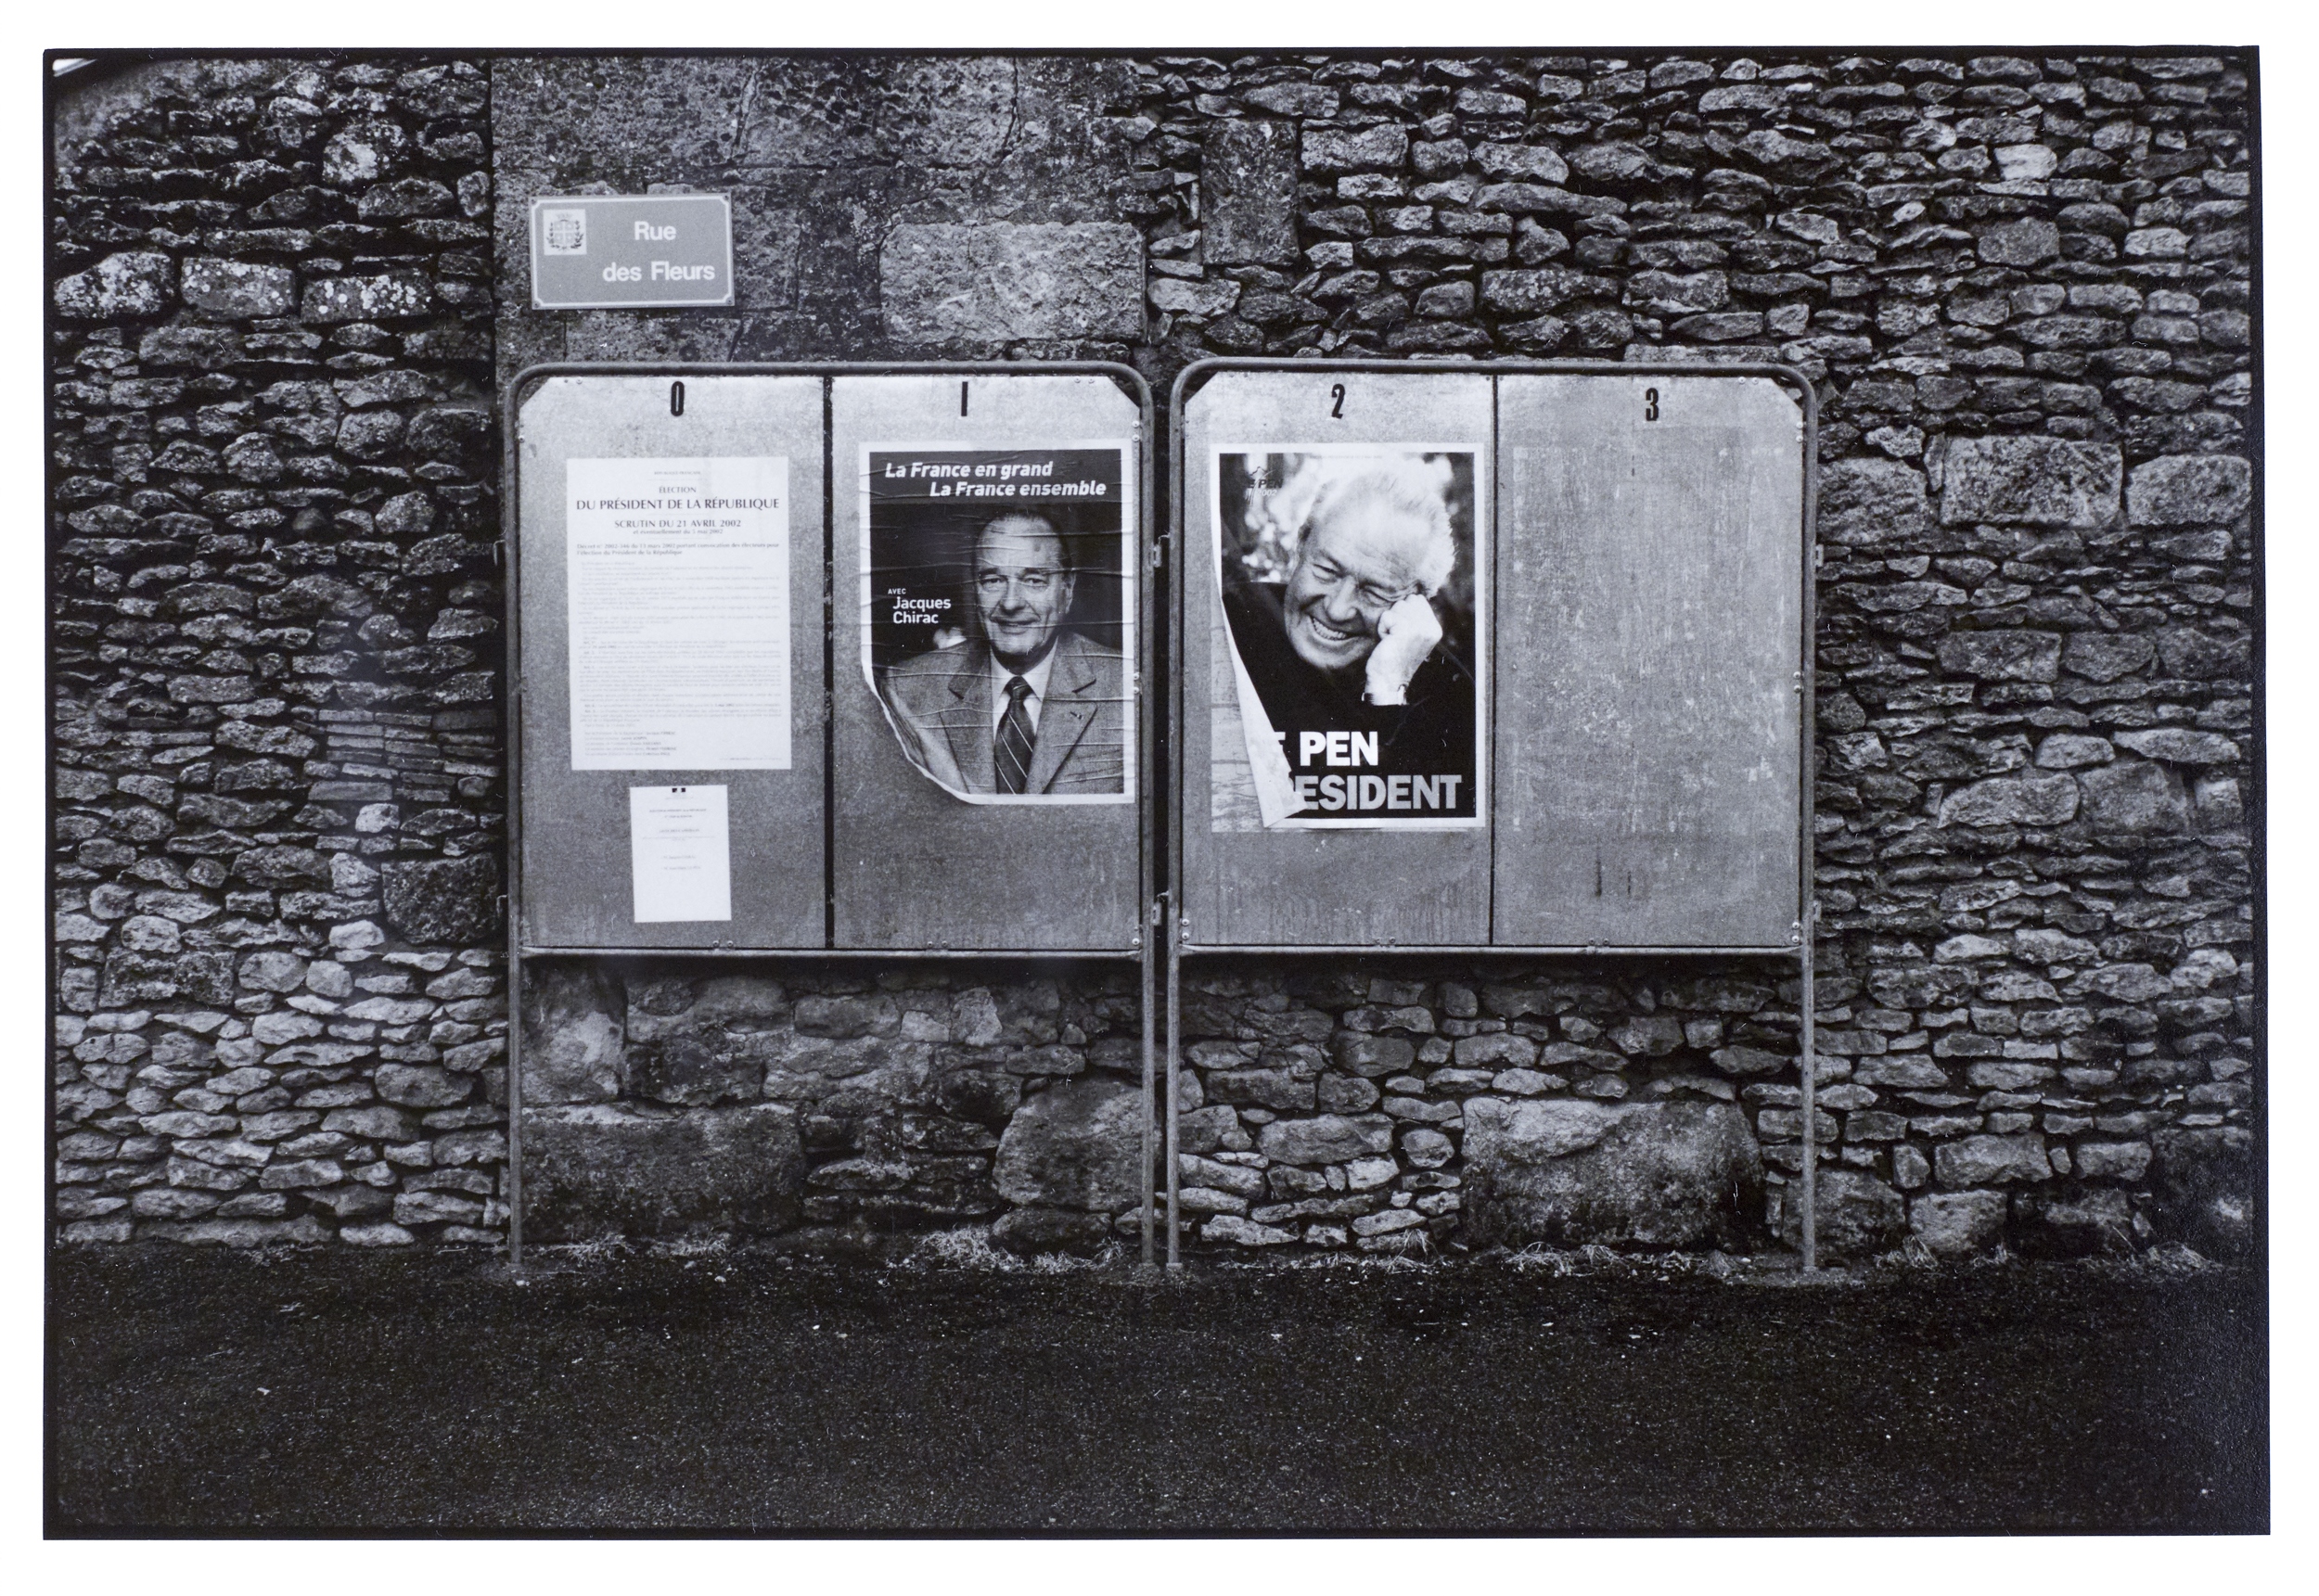 Affiches électorales de Jacques Chirac et de Jean-Marie Le Pen pour le second tour des élections présidentielles de 2002. Photo : Alain Amet. Source : Collections du Musée de Bretagne. Numéro d’inventaire : 2002.0009.54